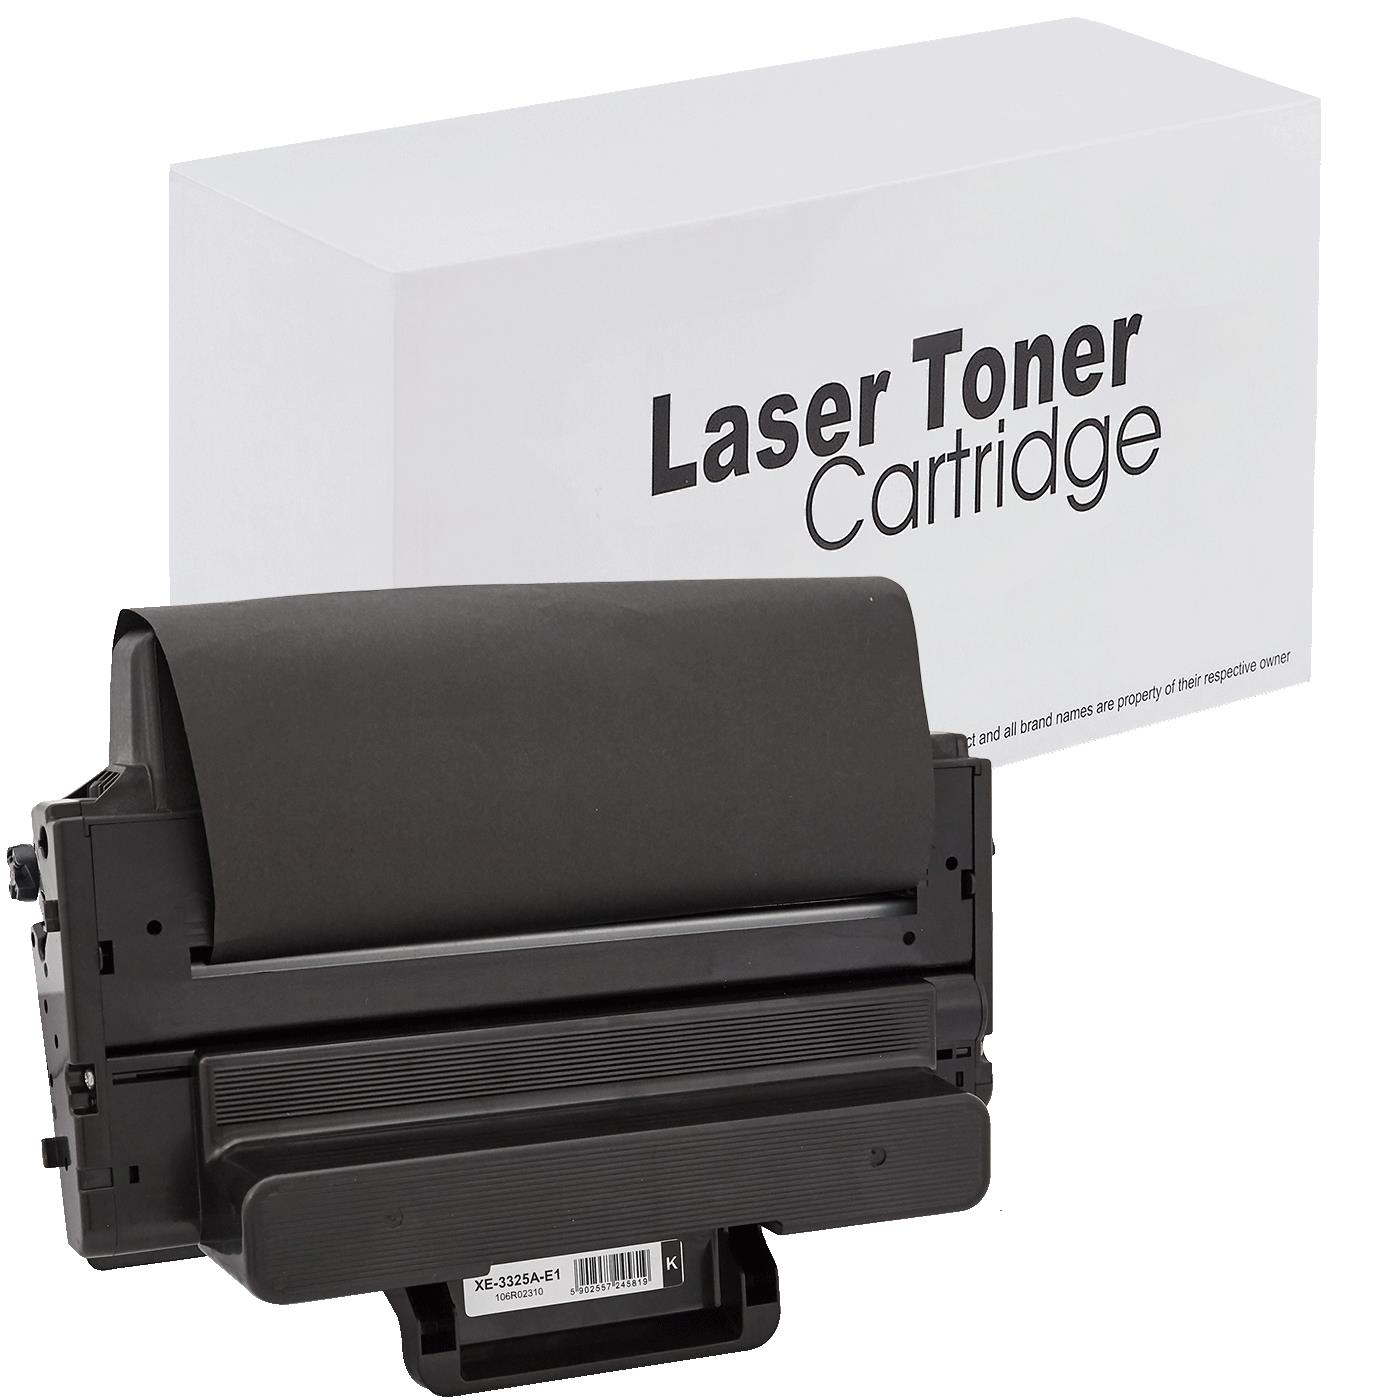 съвместима тонер касета за принтери и печатащи устройства на Xerox Xerox: WC 3315, WC 3325,  WorkCentre 3315, 3325,  new new Toner XE-3325A | 106R02310. Ниски цени, прецизно изпълнение, високо качество.